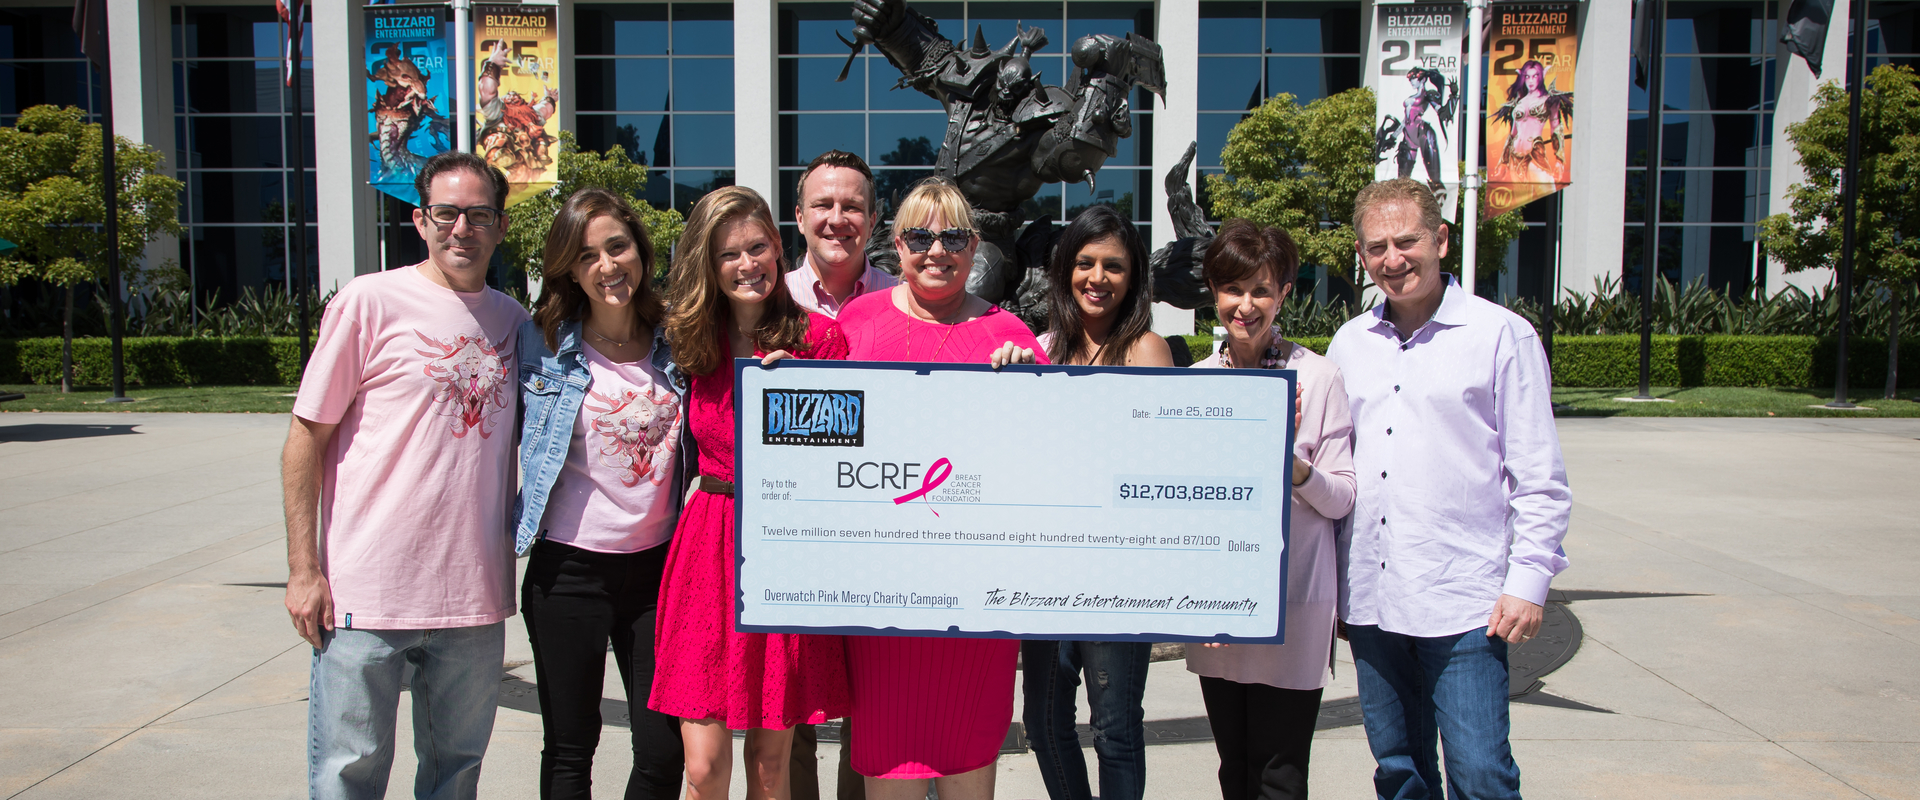 Több mint 12 millió dollár gyűlt össze a Pink Mercy jótékonysági kampány során